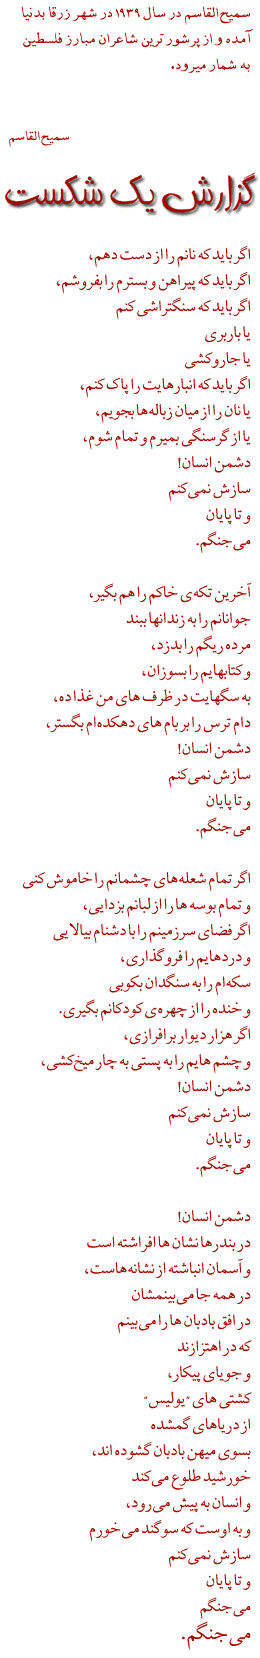 A poem by Samih Al Qasim